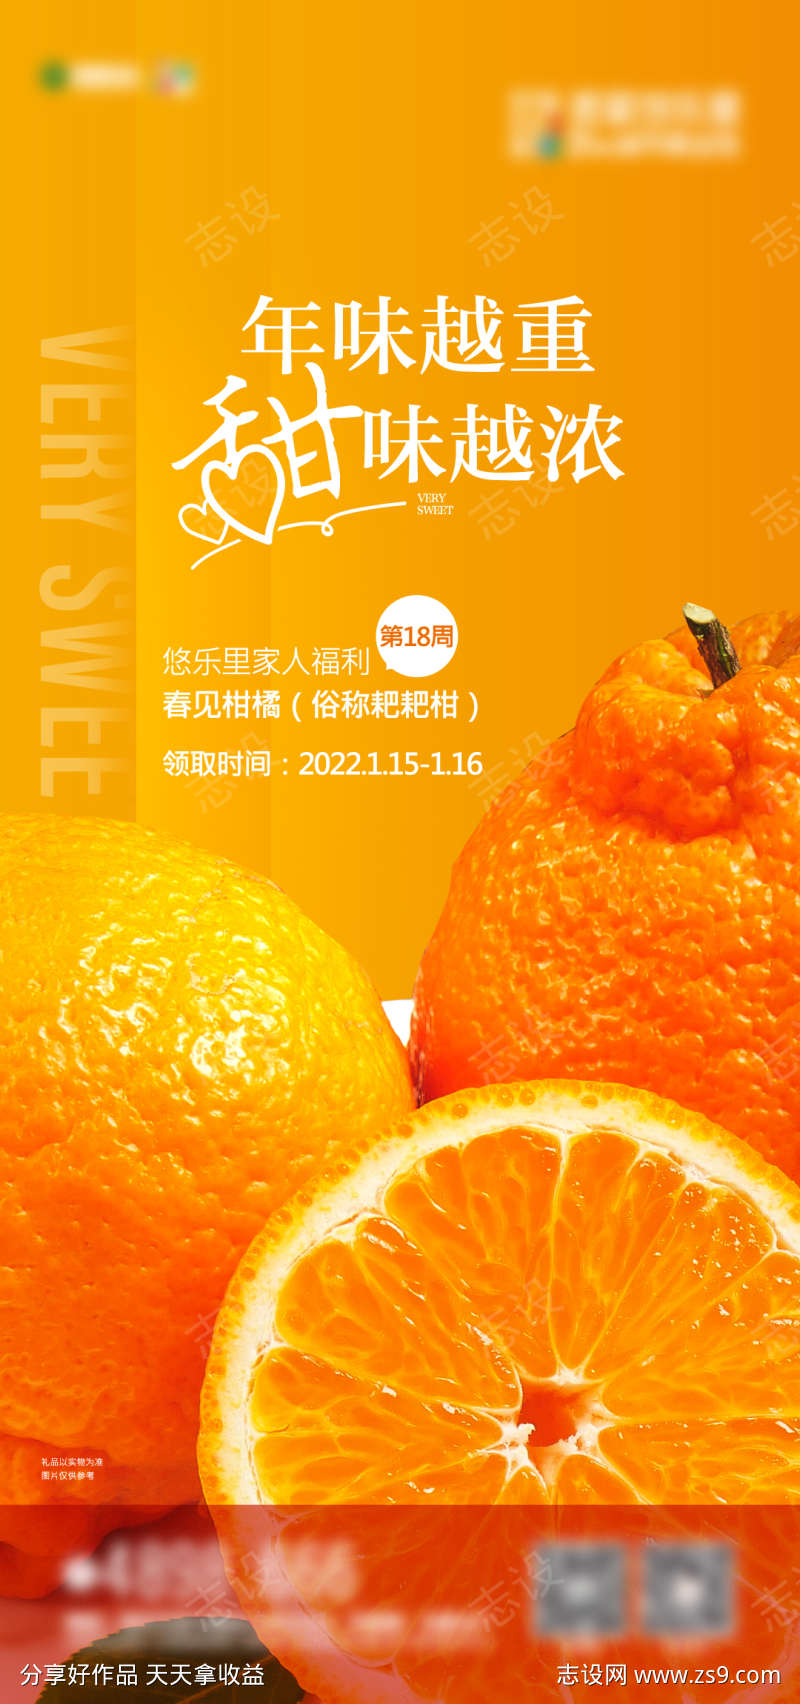 送橙子海报